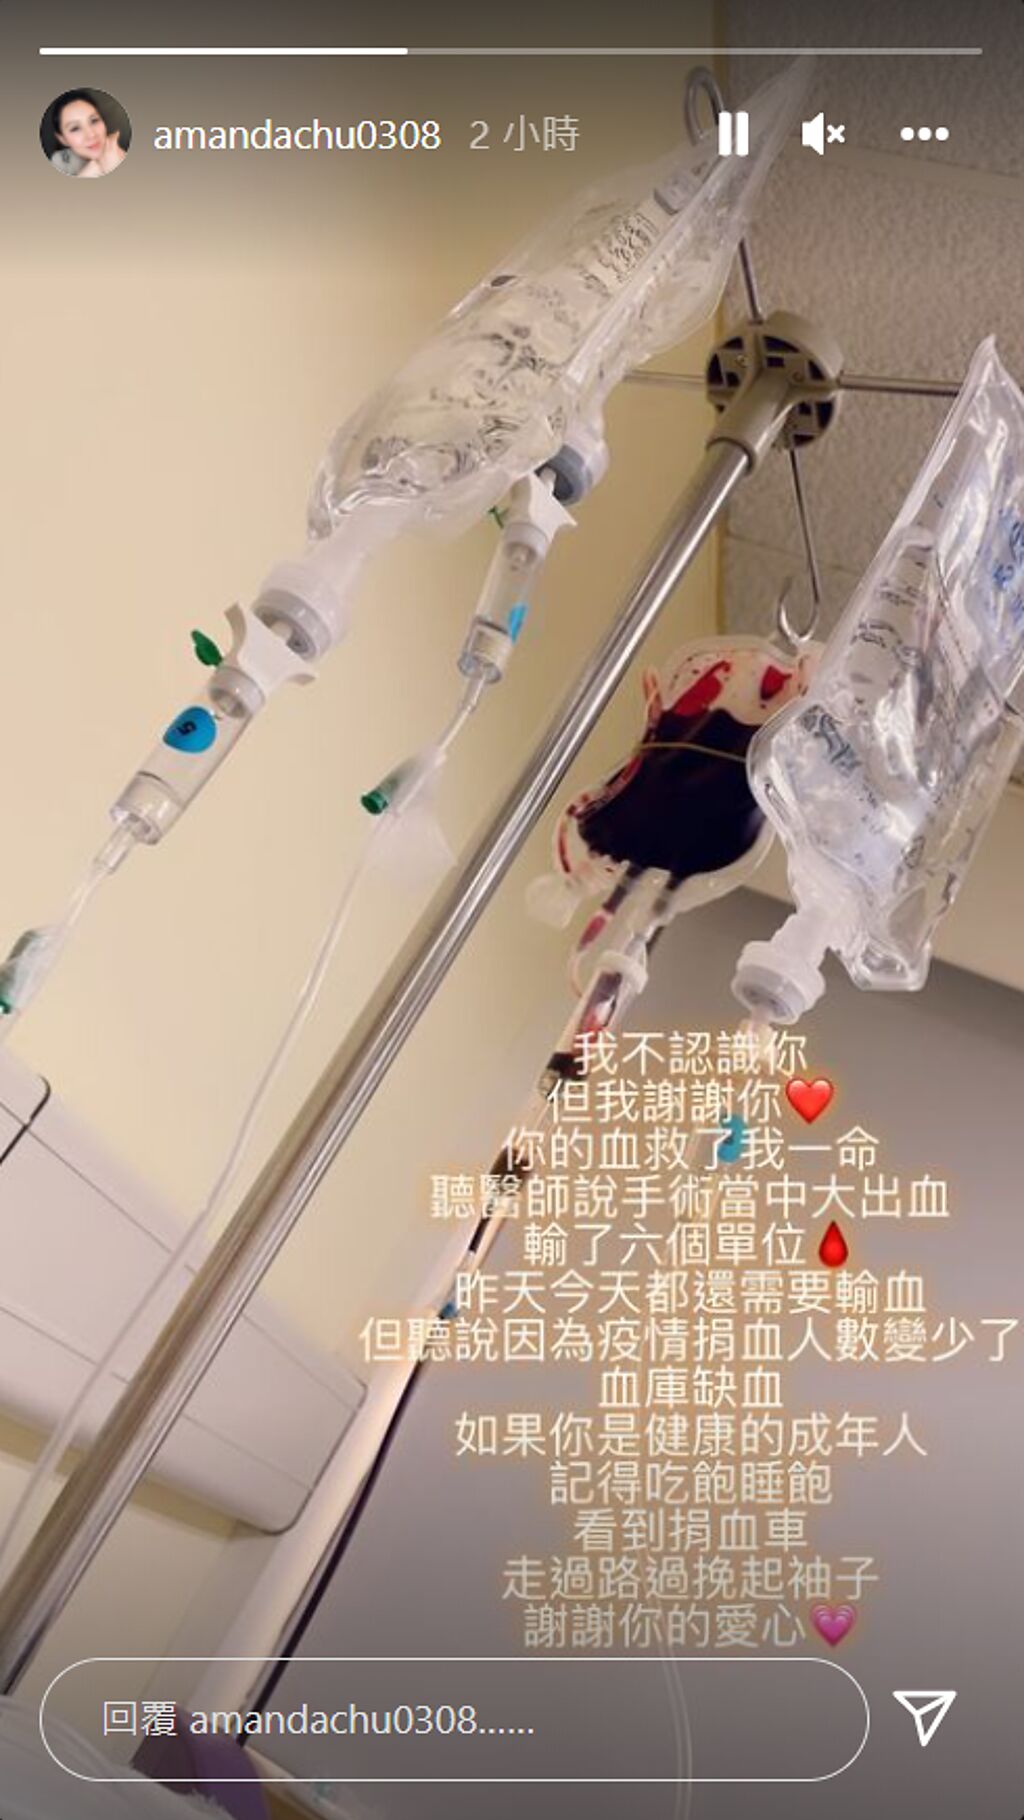 朱芯儀發限動表示曾大出血，好險有人捐血給她這才度過難關。(圖/朱芯儀 IG)